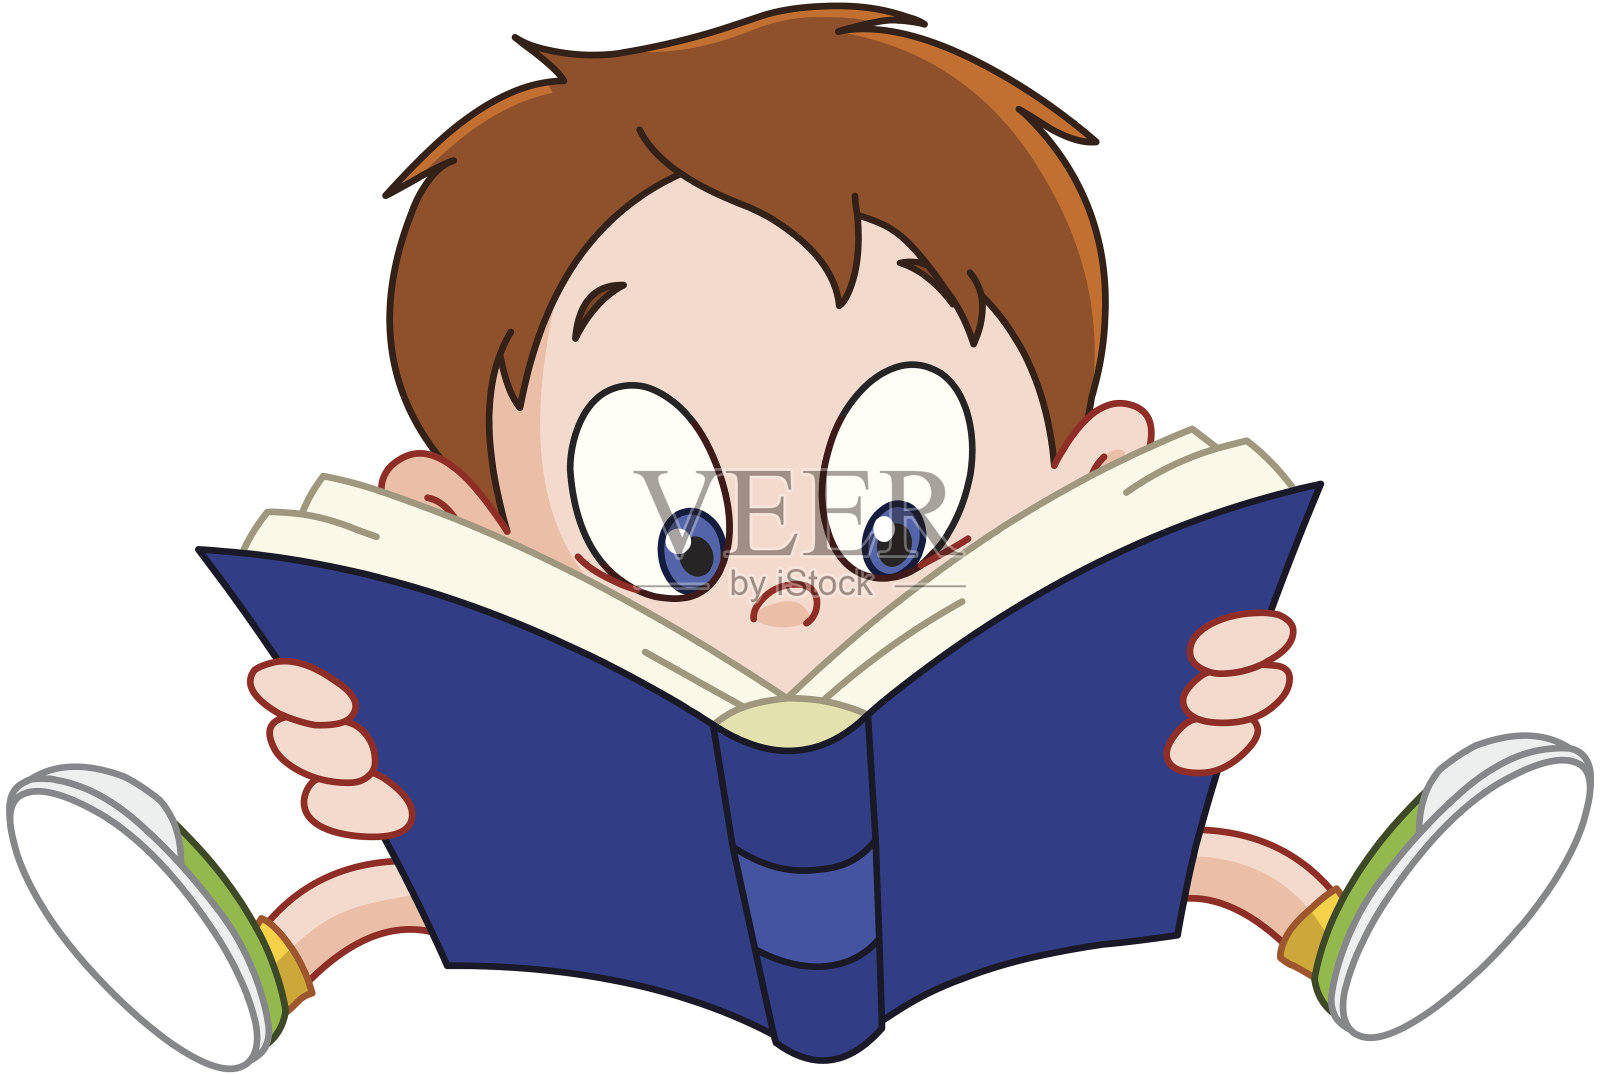 这是一个正在读书的男孩的卡通形象设计元素图片